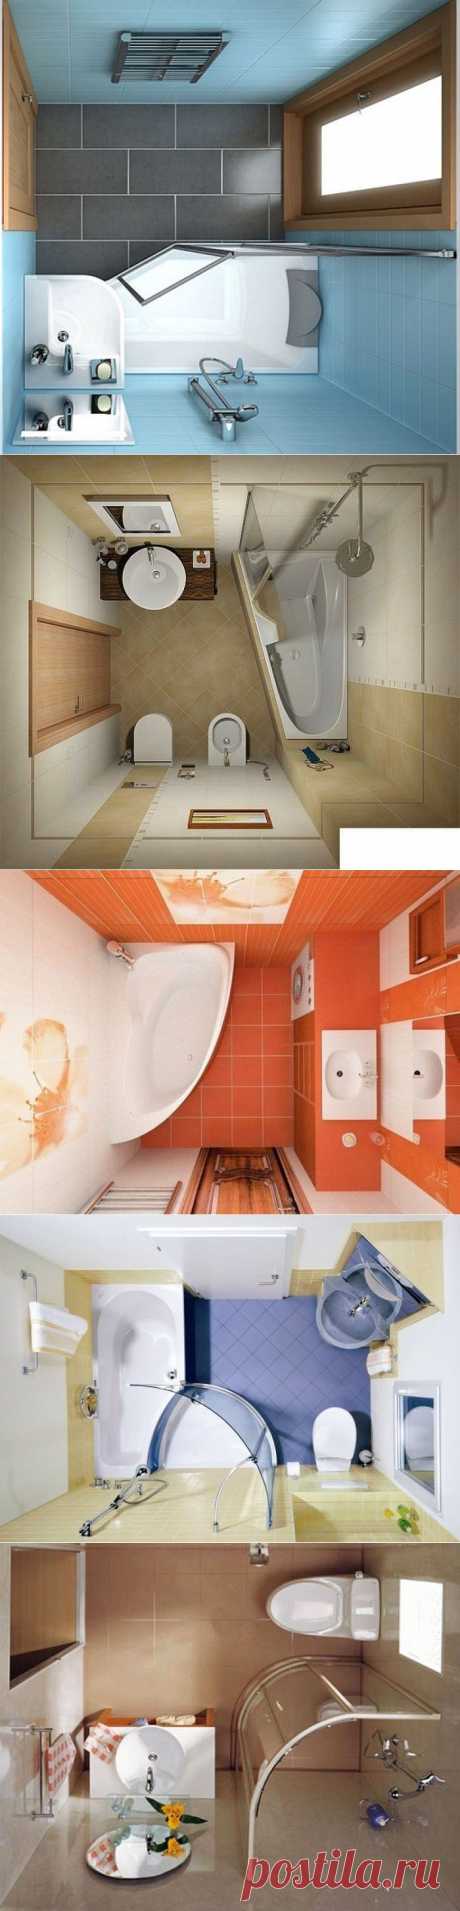 Решения для ванной комнаты